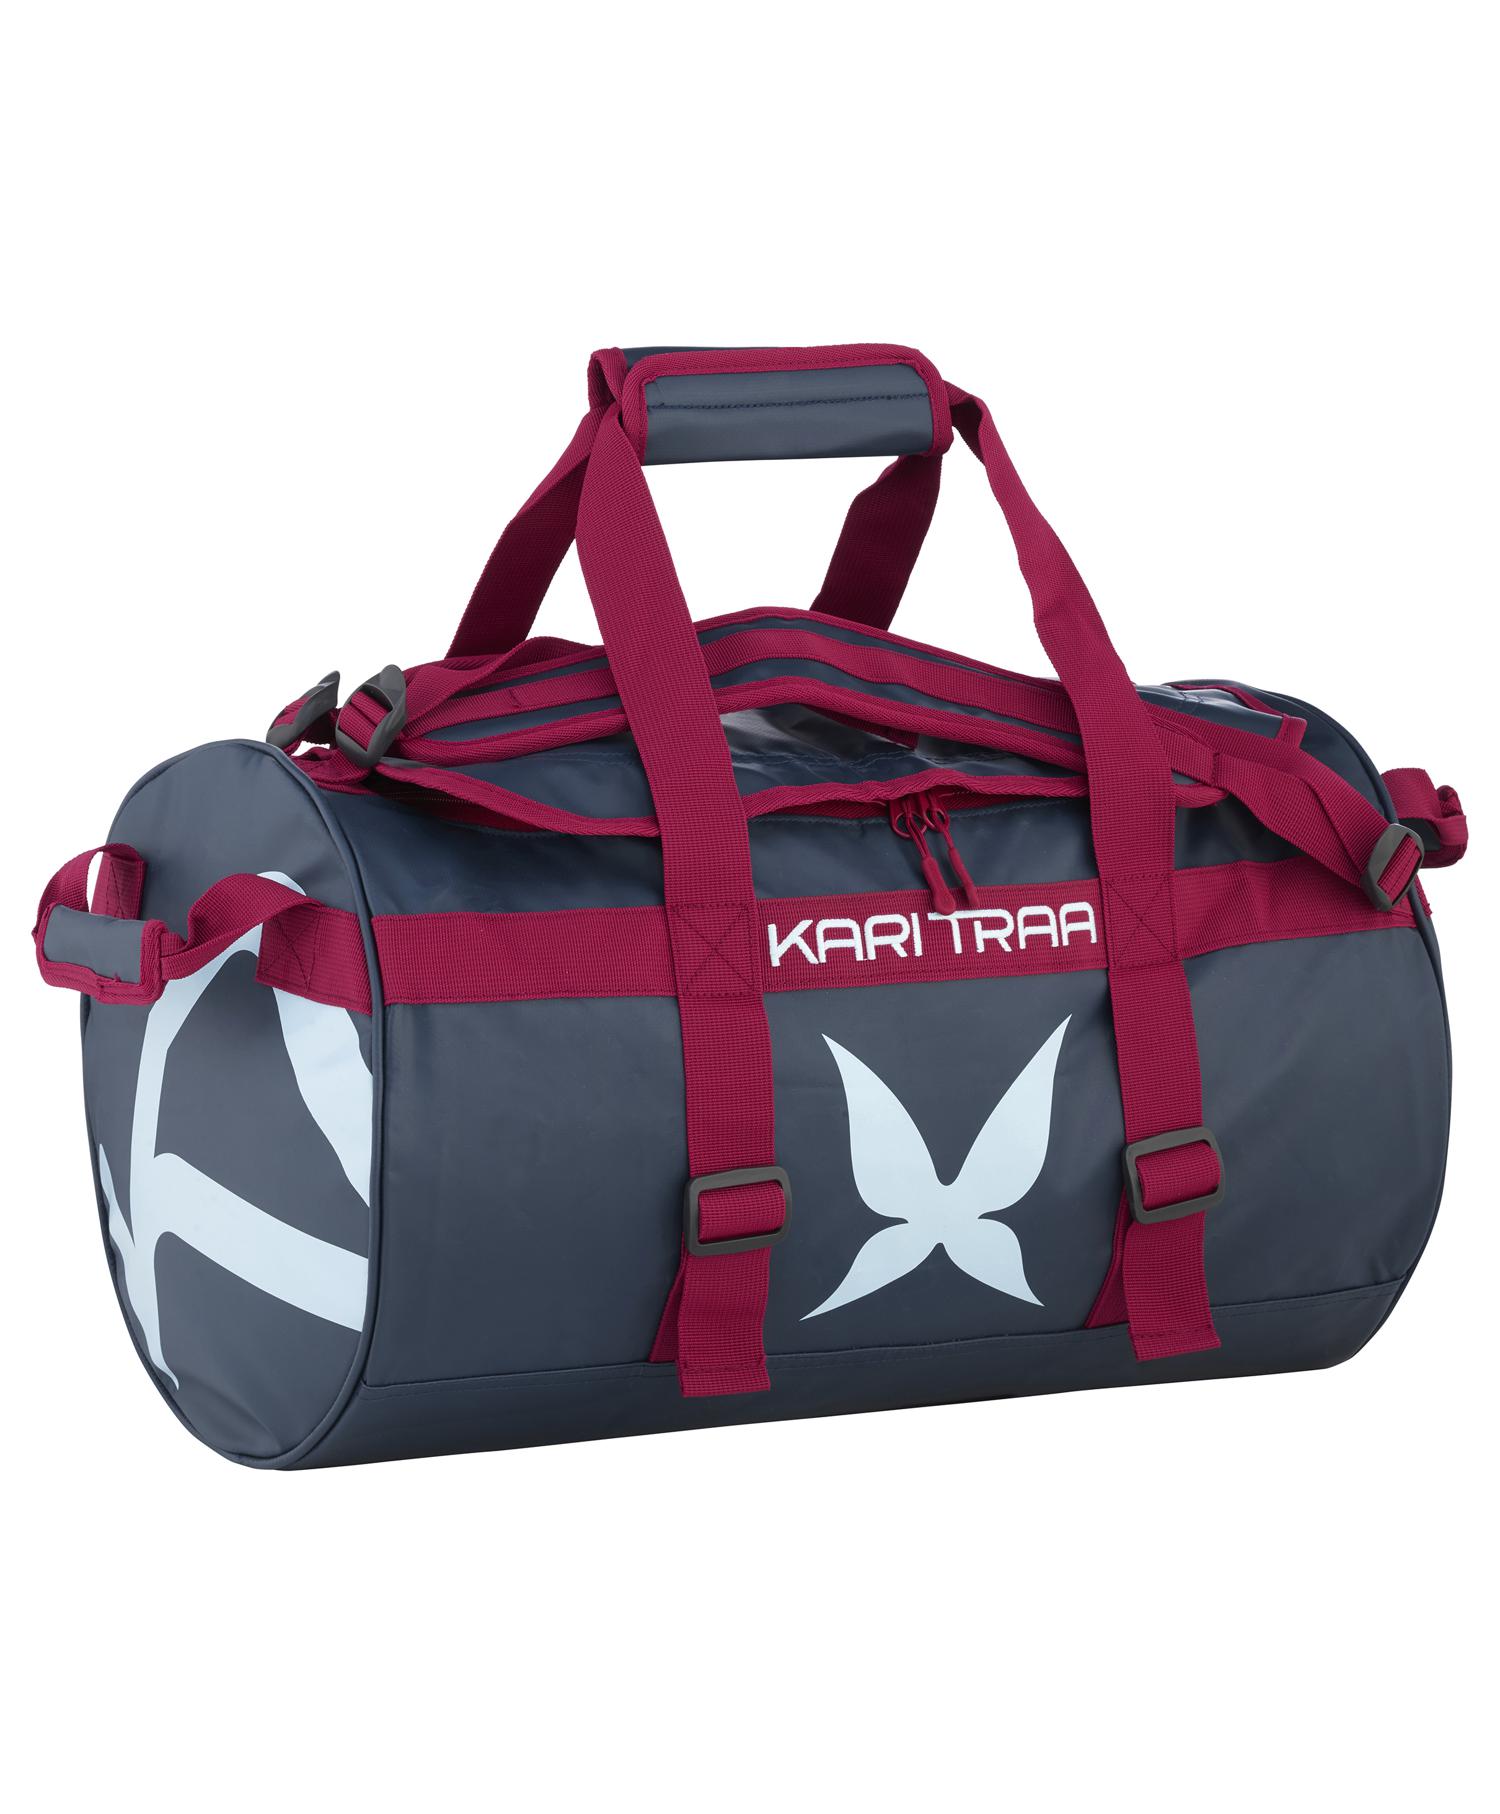 Kari Traa 30L bag